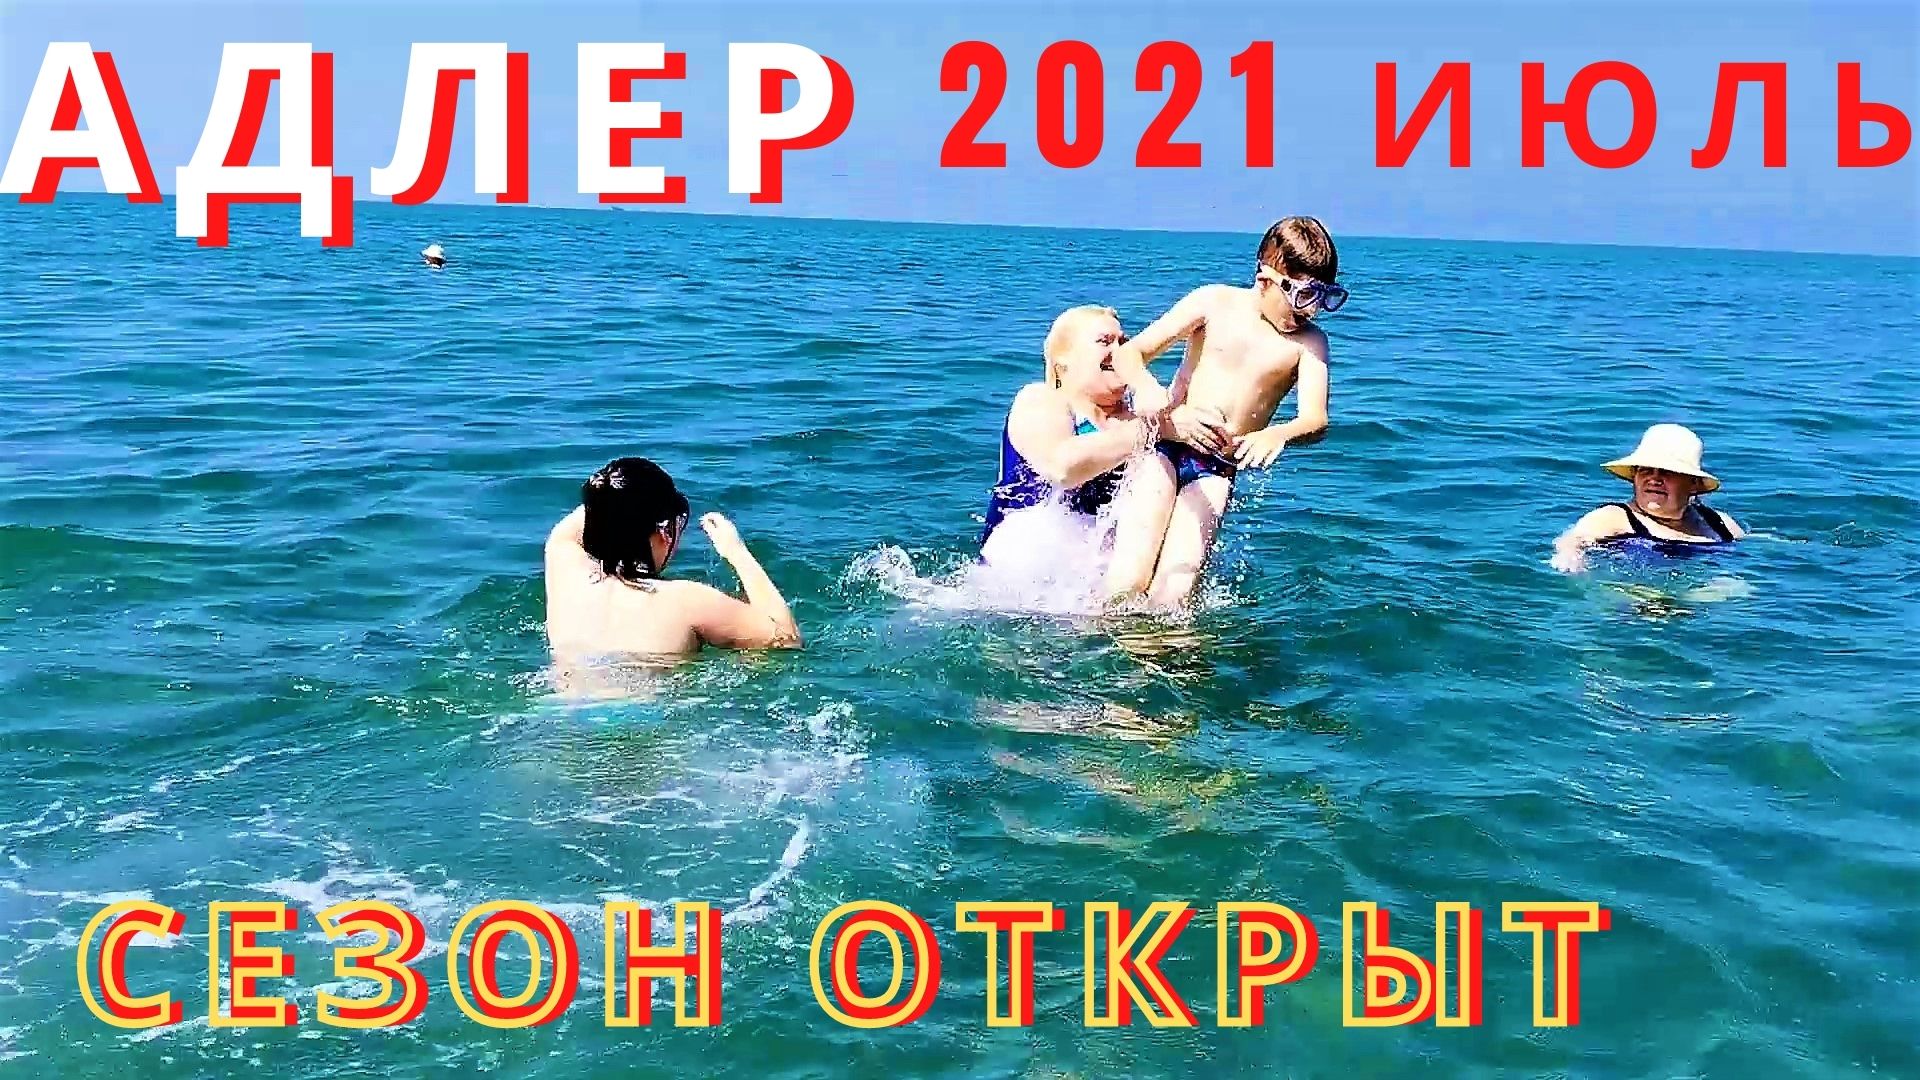 В Адлере 2021, в июле пляж на Белорусской